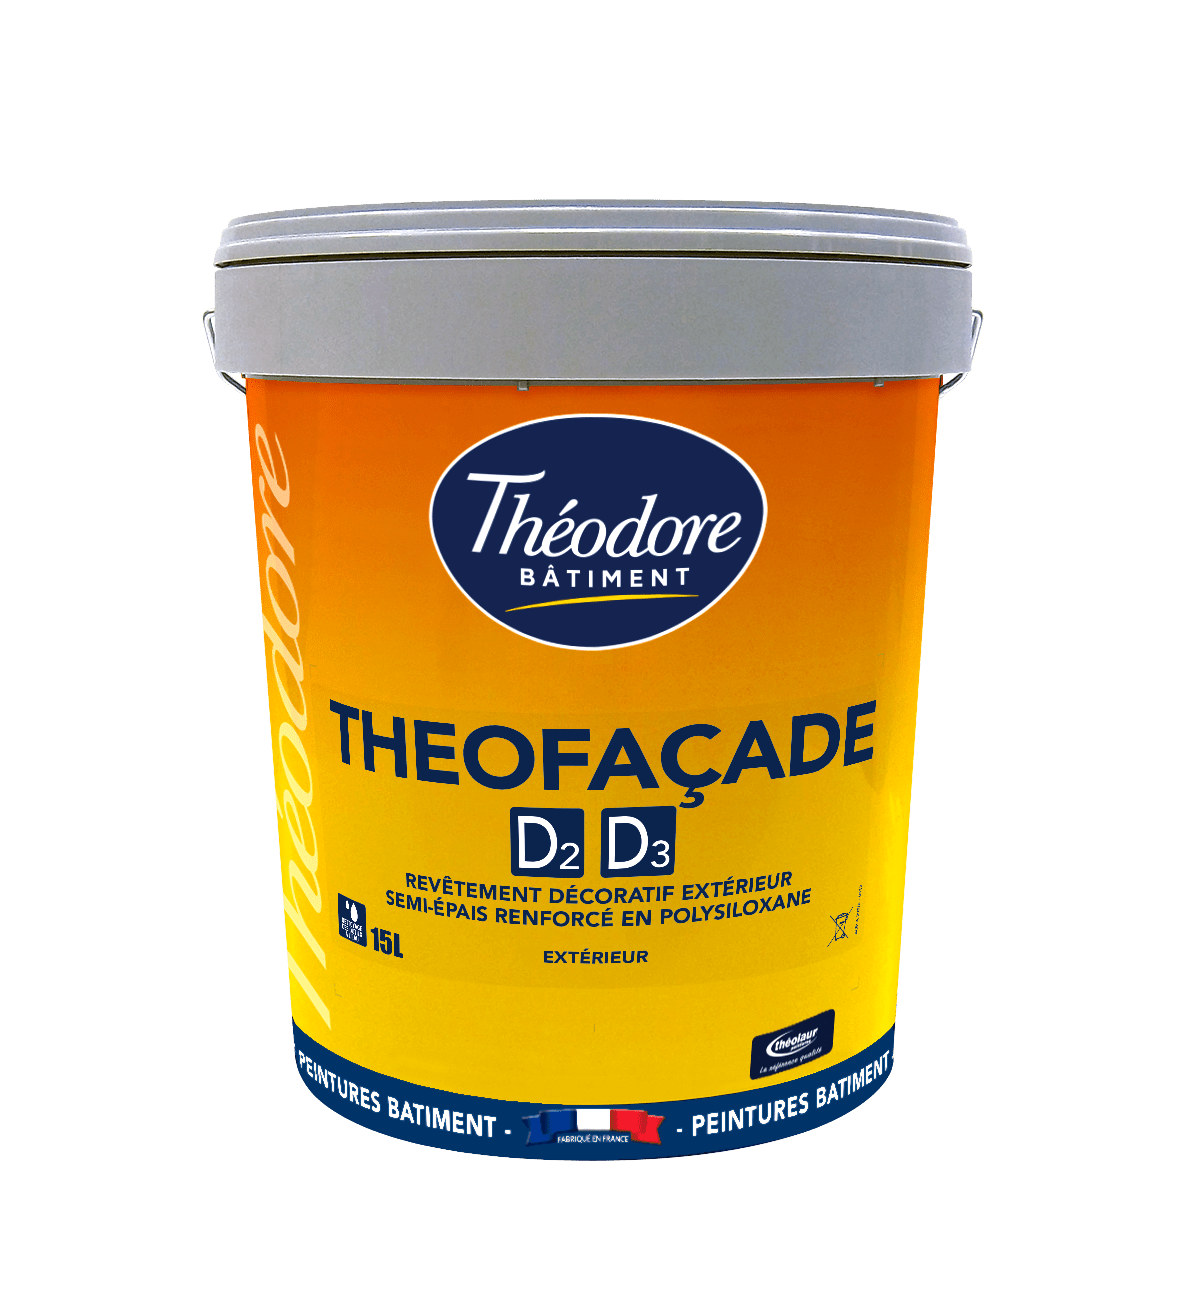 Theofacade d2 d3 0819